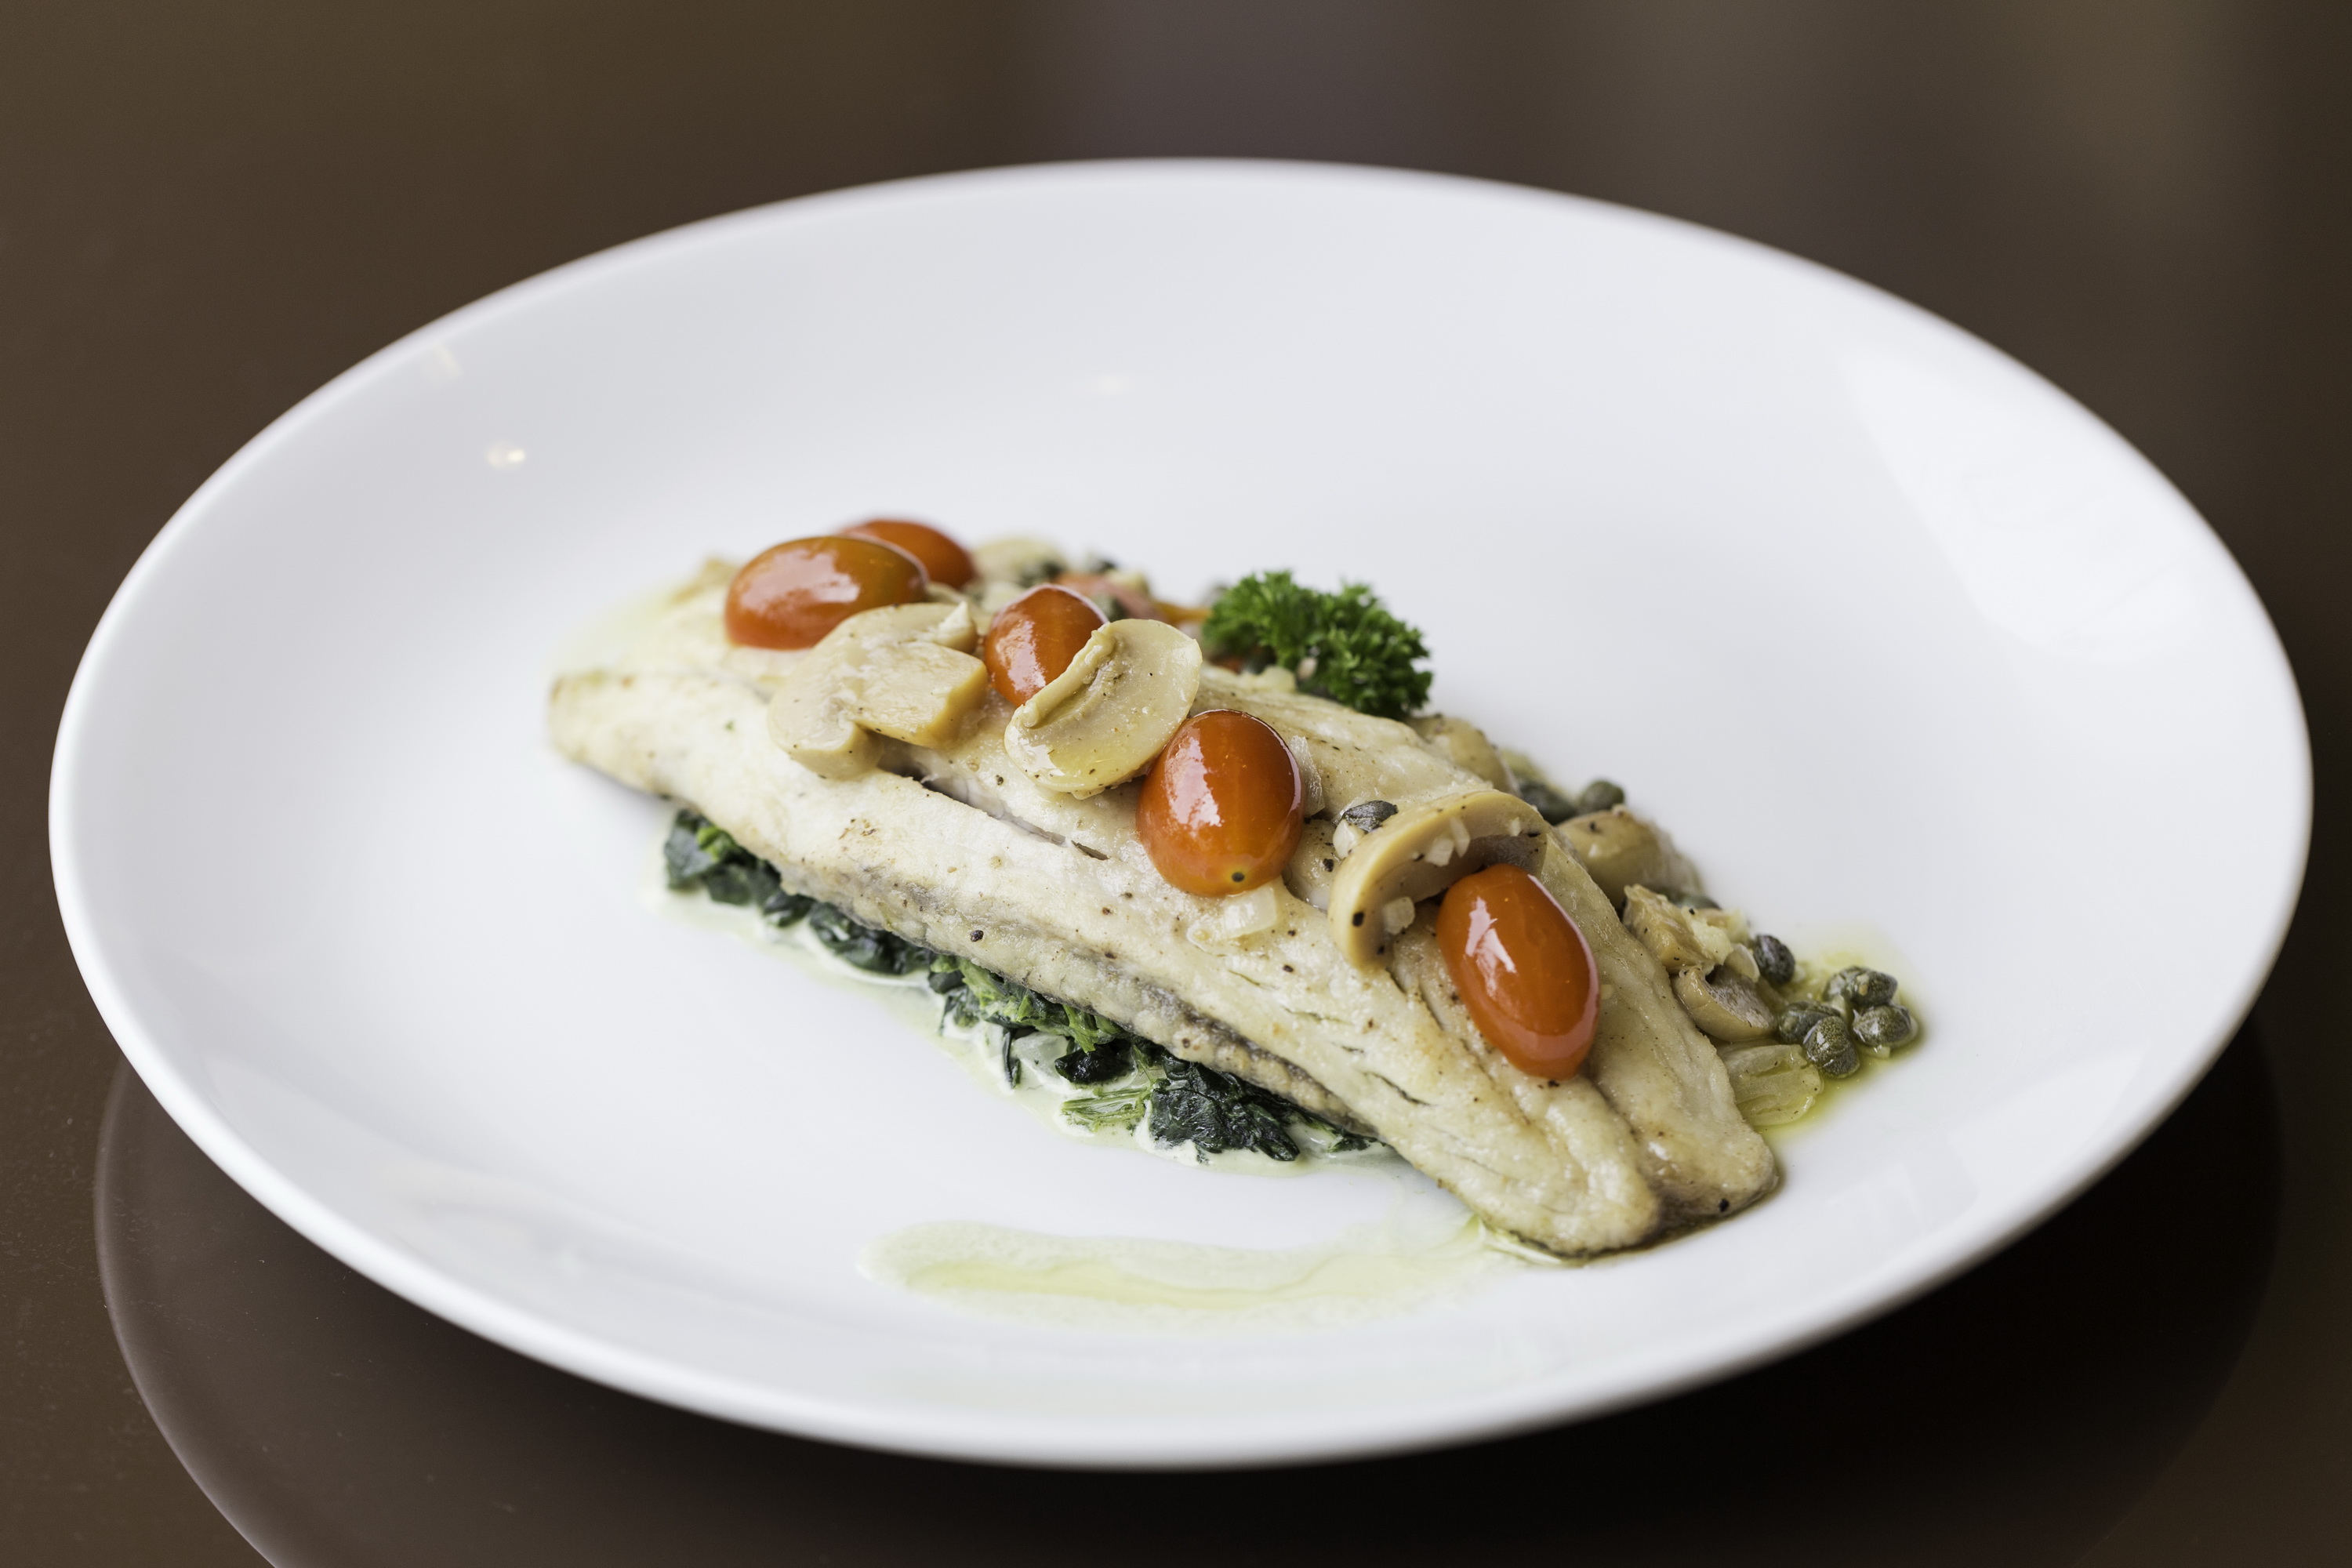 รูปภาพของ เนื้อปลากะพงขาวทอด เสิร์ฟพร้อมผักโขมผัดเนย ที่ห้องอาหารเลอ มาแรงน์ โรงแรม เคป ราชา ศรีราชา